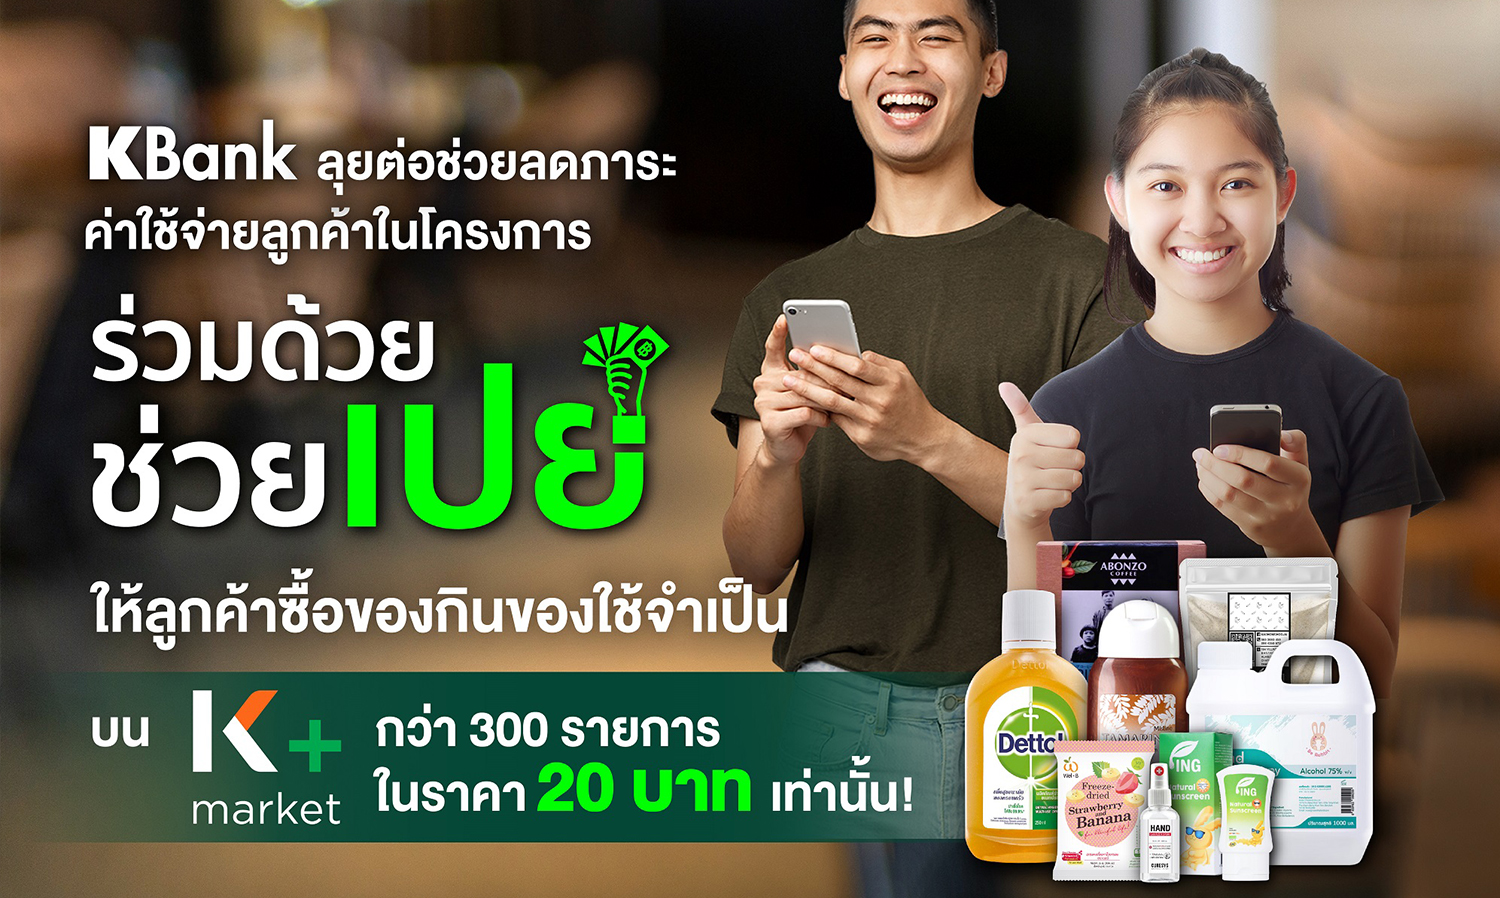 กสิกรไทย ช่วยลดค่าครองชีพคนไทยผ่านโครงการ ร่วมด้วย ช่วยเปย์ บน K+ market หั่นราคาของกินของใช้เหลือ 20 บาทเท่านั้น!